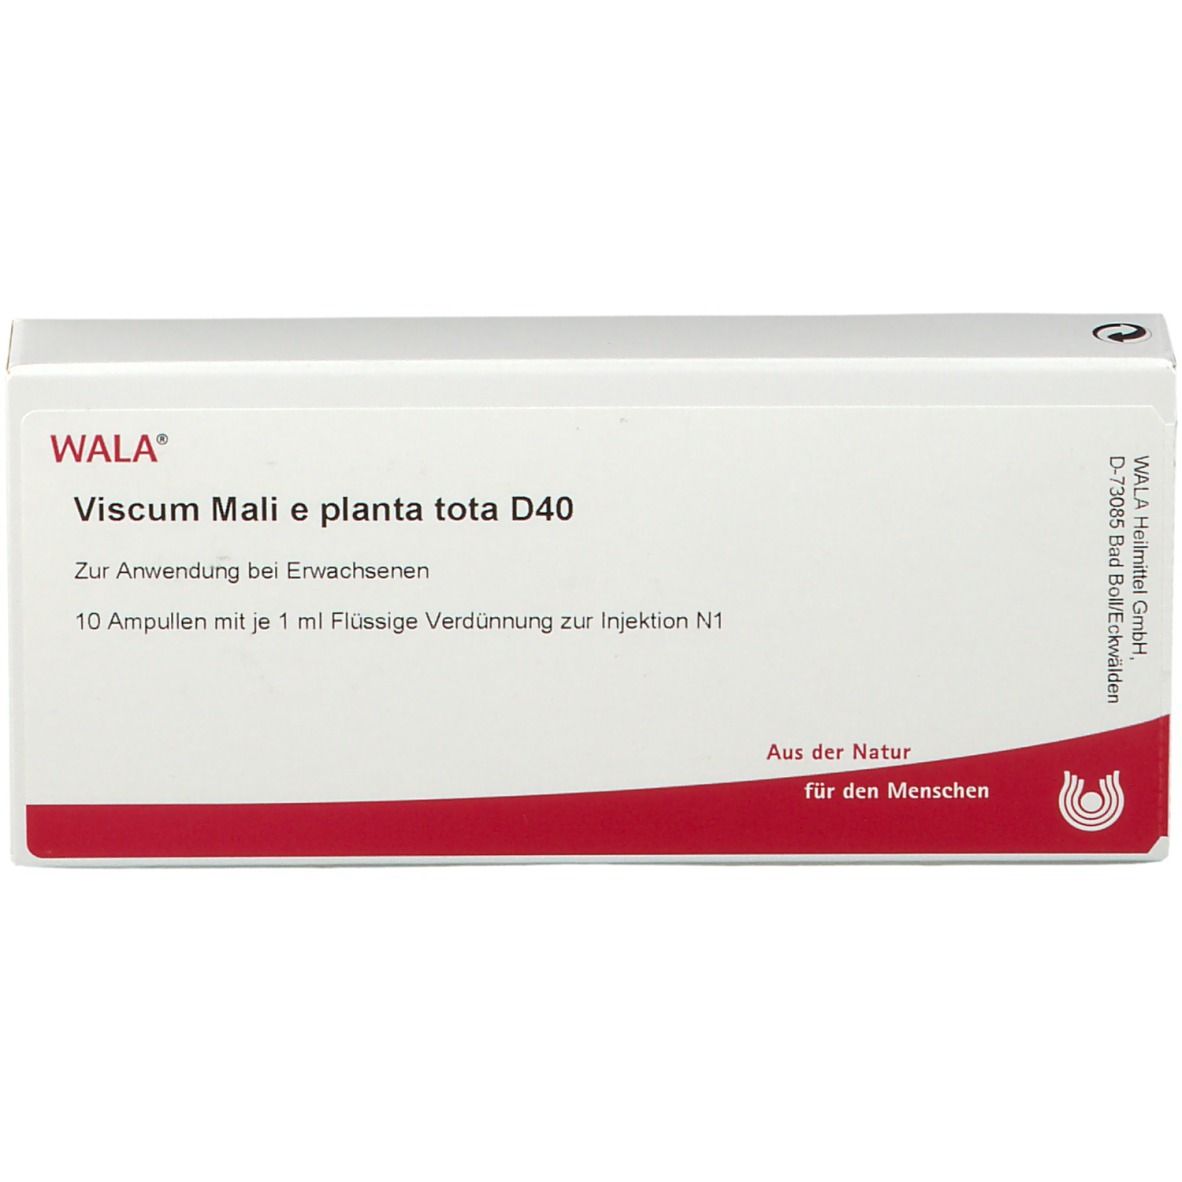 WALA® Viscum Mali e planta tota D 40 Ampullen